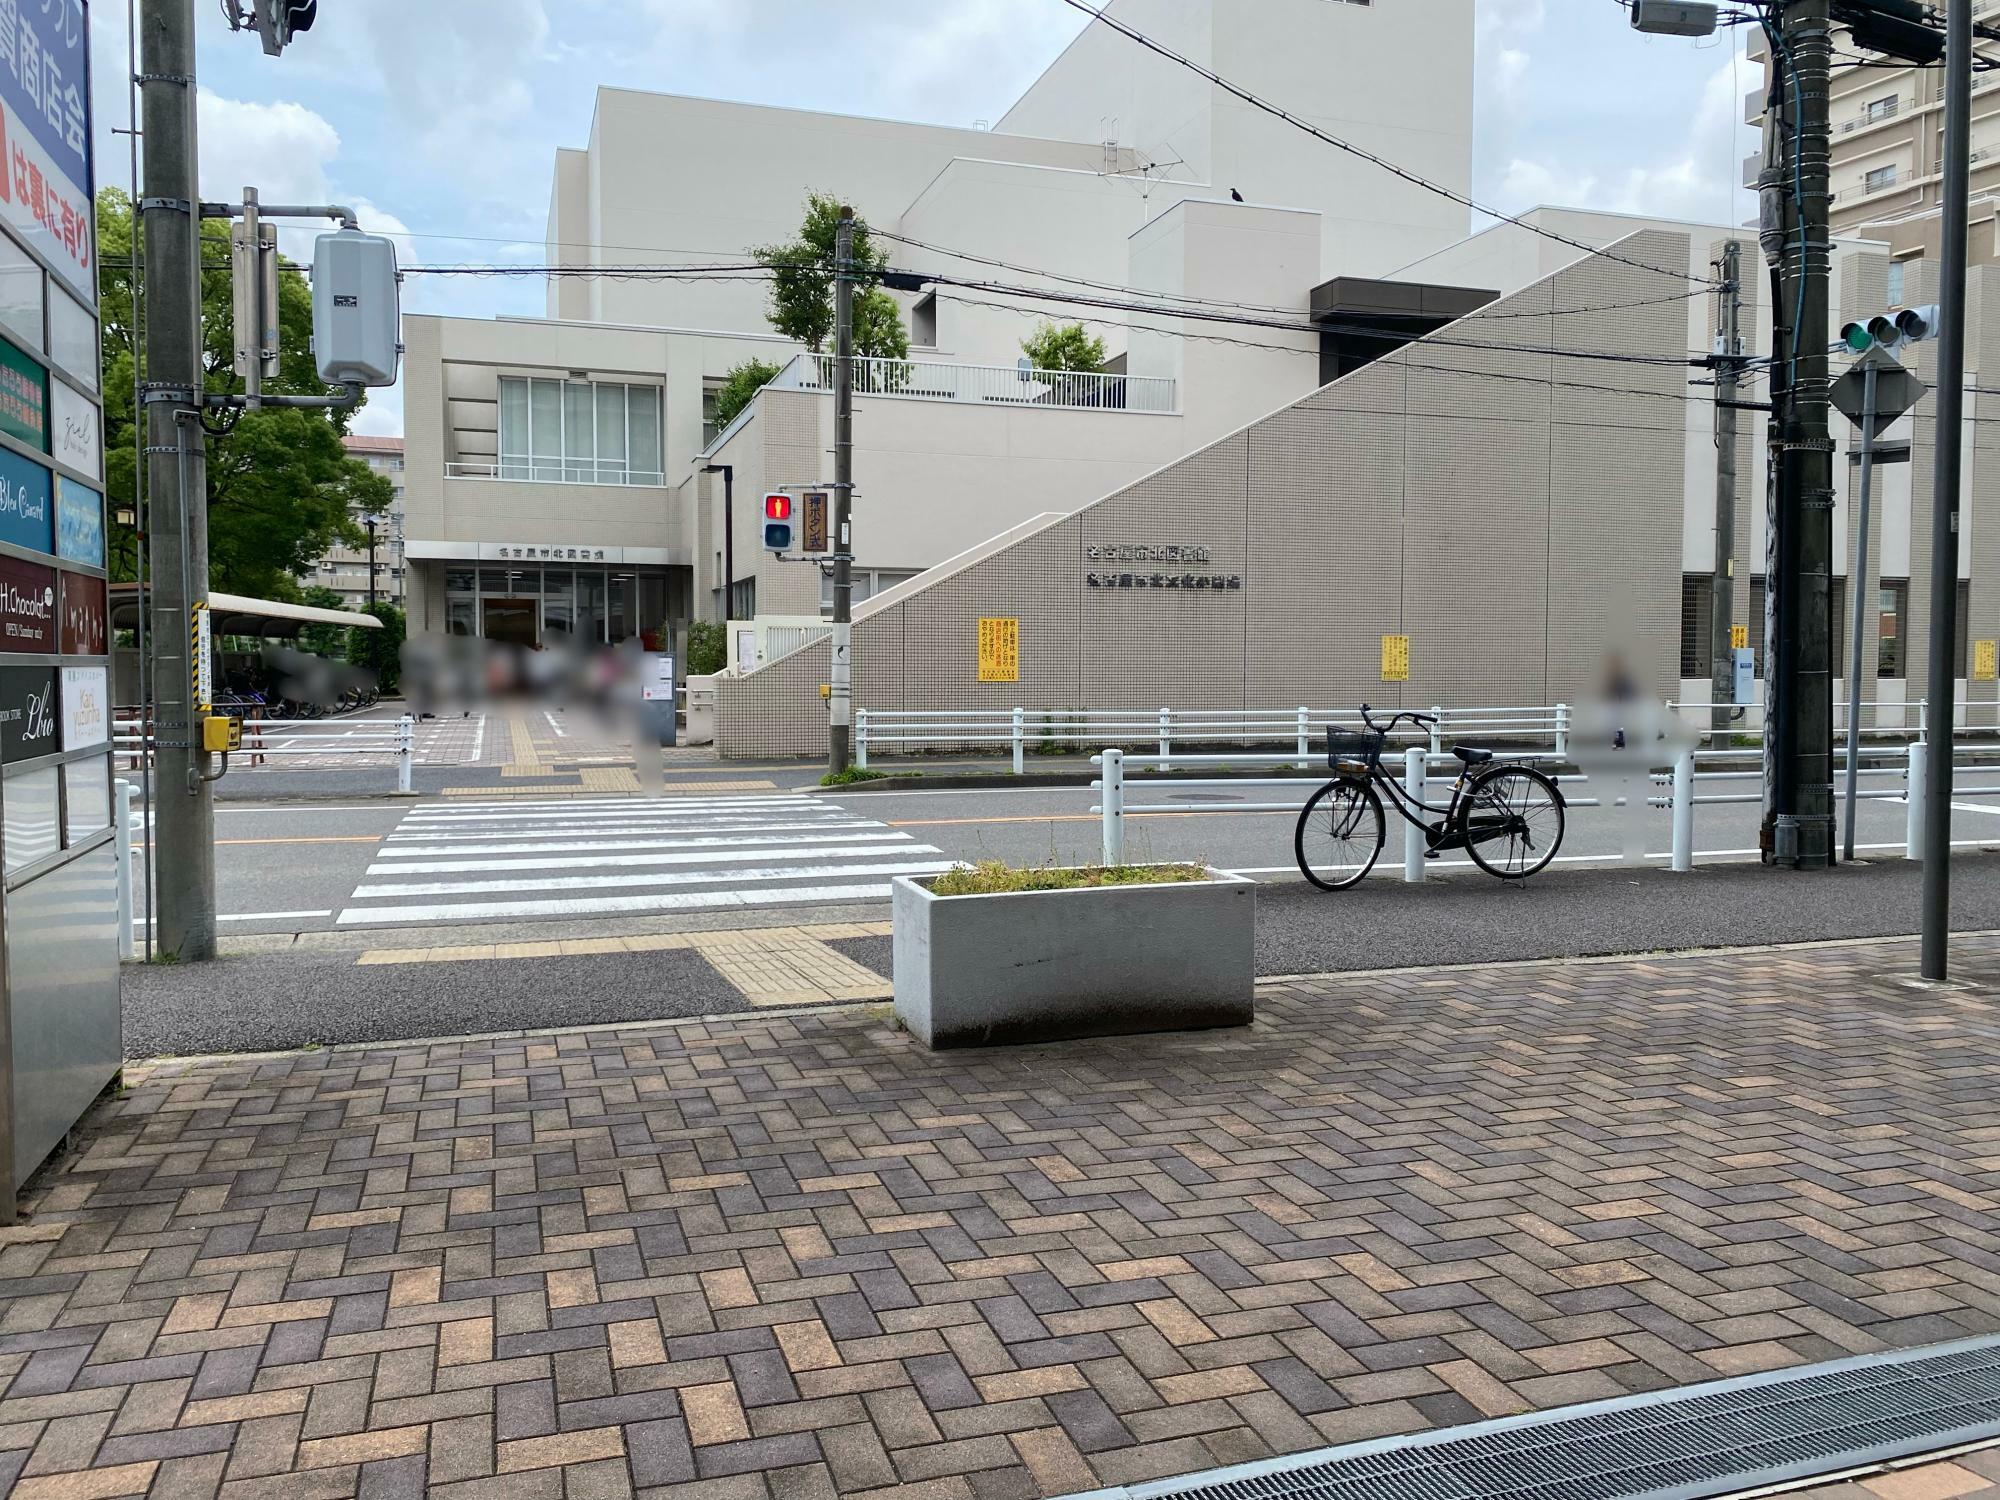 お店のすぐ目の前には「名古屋市北図書館」